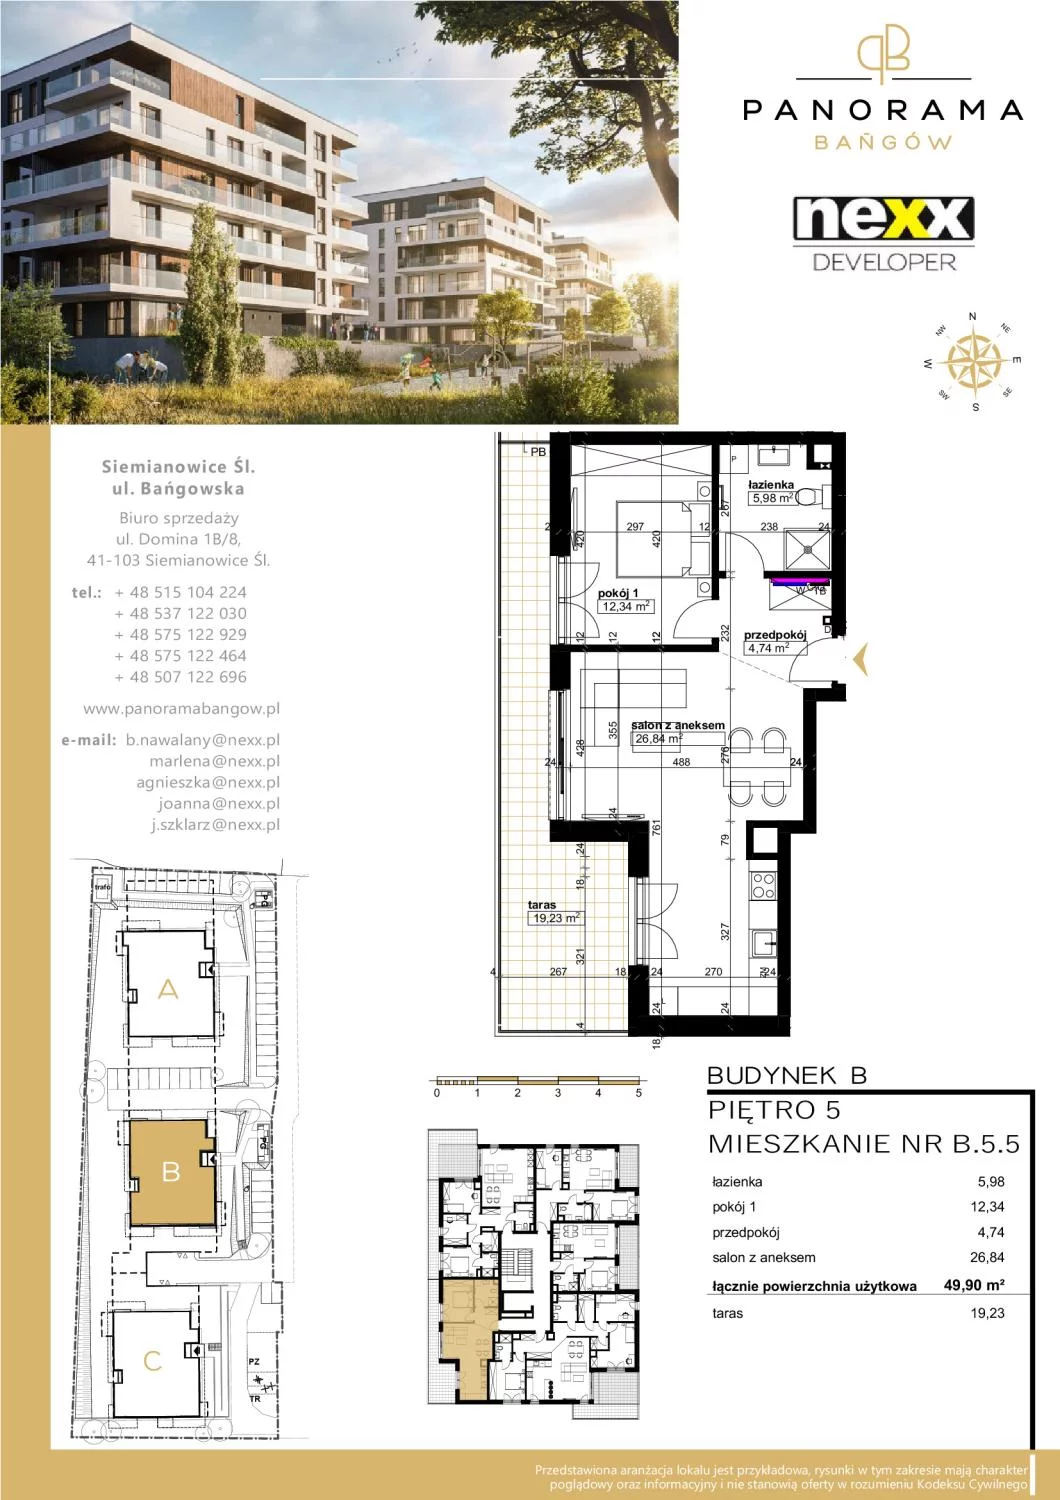 Mieszkanie 49,90 m², piętro 5, oferta nr B 5.5, Panorama Bańgów, Siemianowice Śląskie, Bańgów, ul. Bańgowska